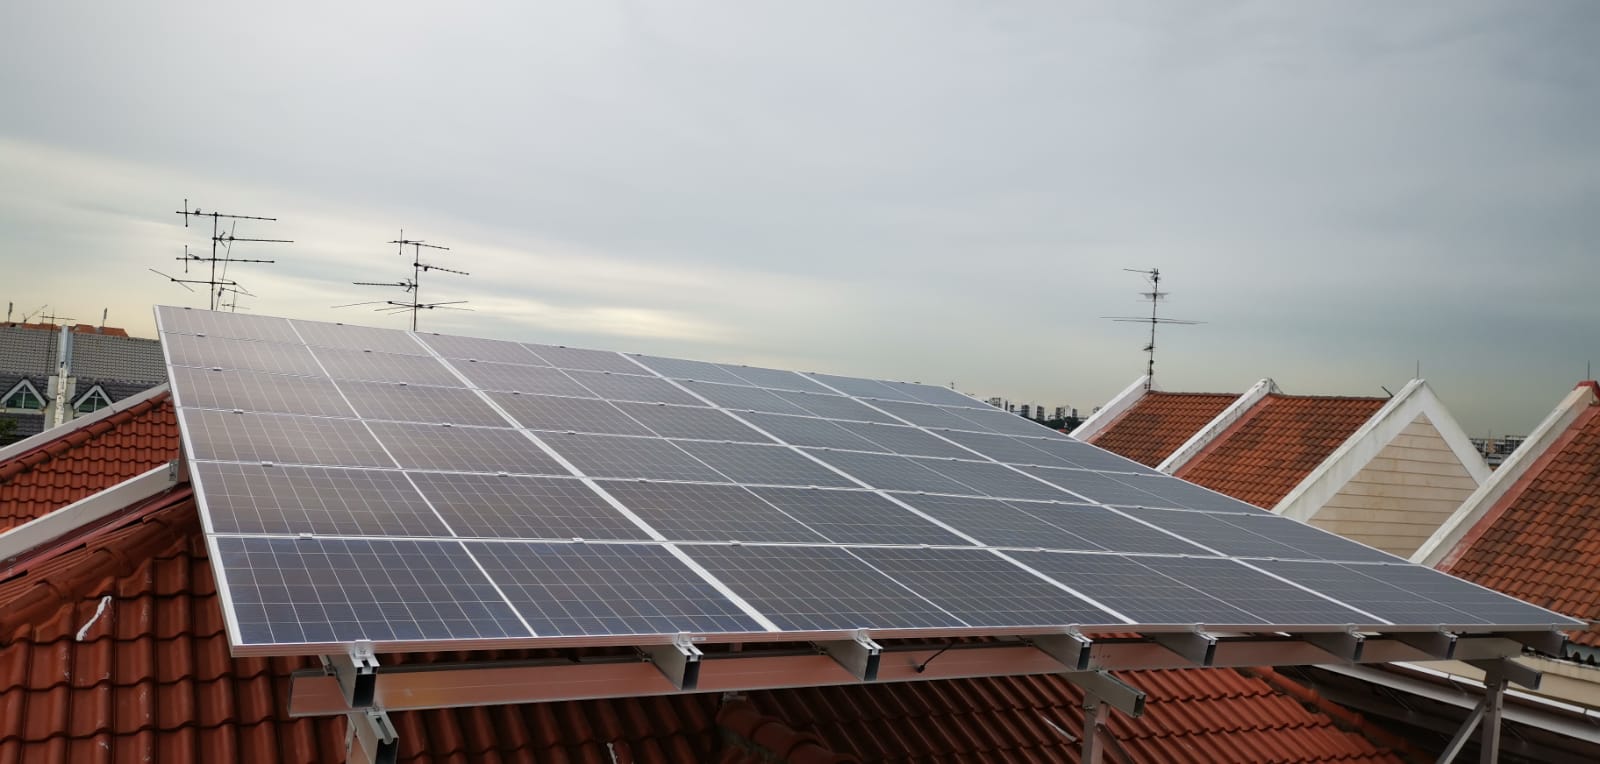 Монтажные конструкции Roof Solar установлены в Сингапуре в октябре 2020 г.